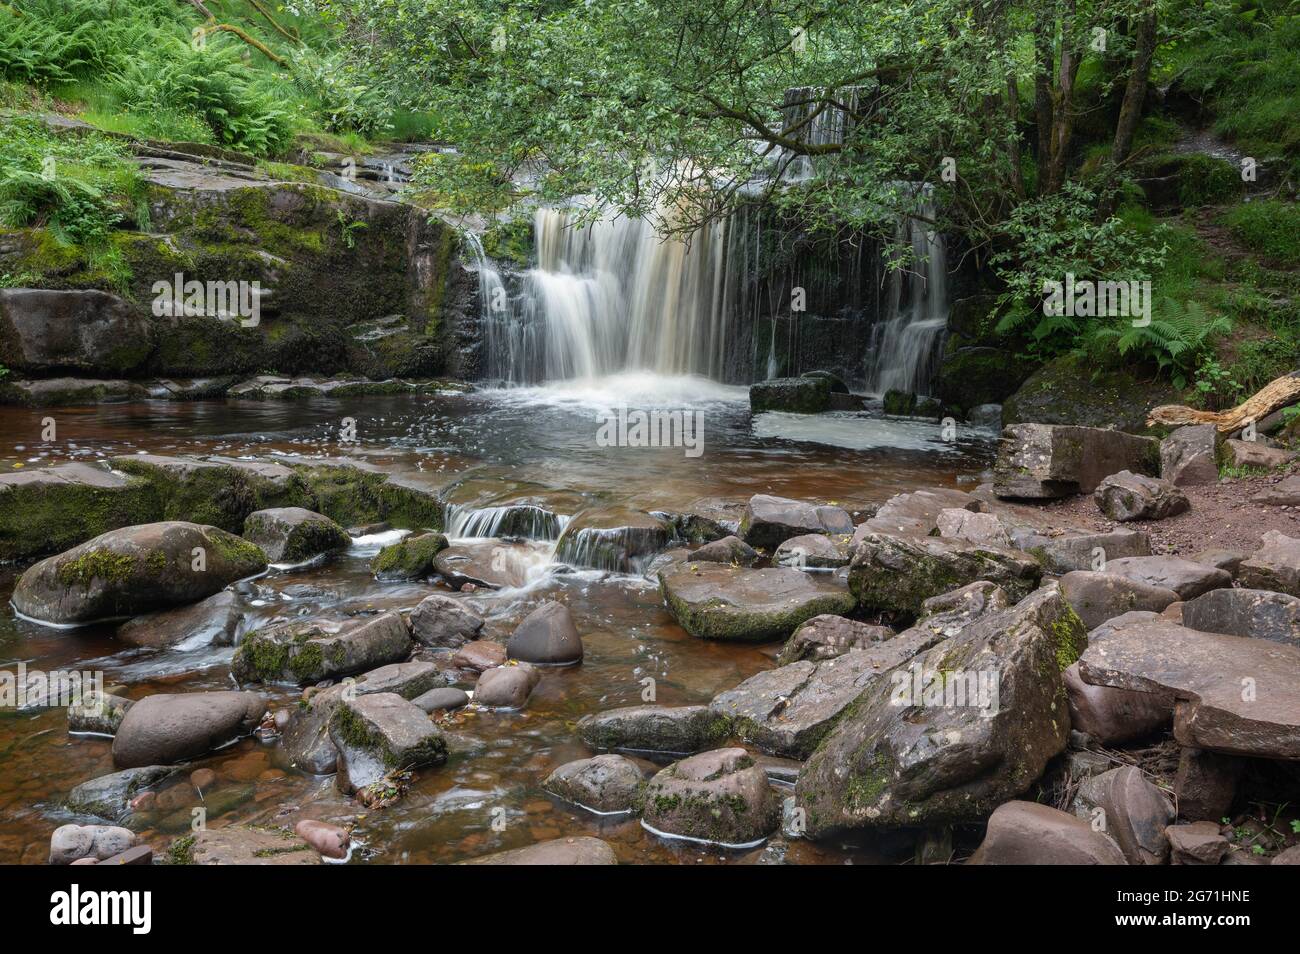 Natürliche wunderschöne Wasserfälle, die mit langer Exposition aufgenommen wurden, um das Wasser in den Brecon Beacons South Wales seidig glatt zu machen Stockfoto